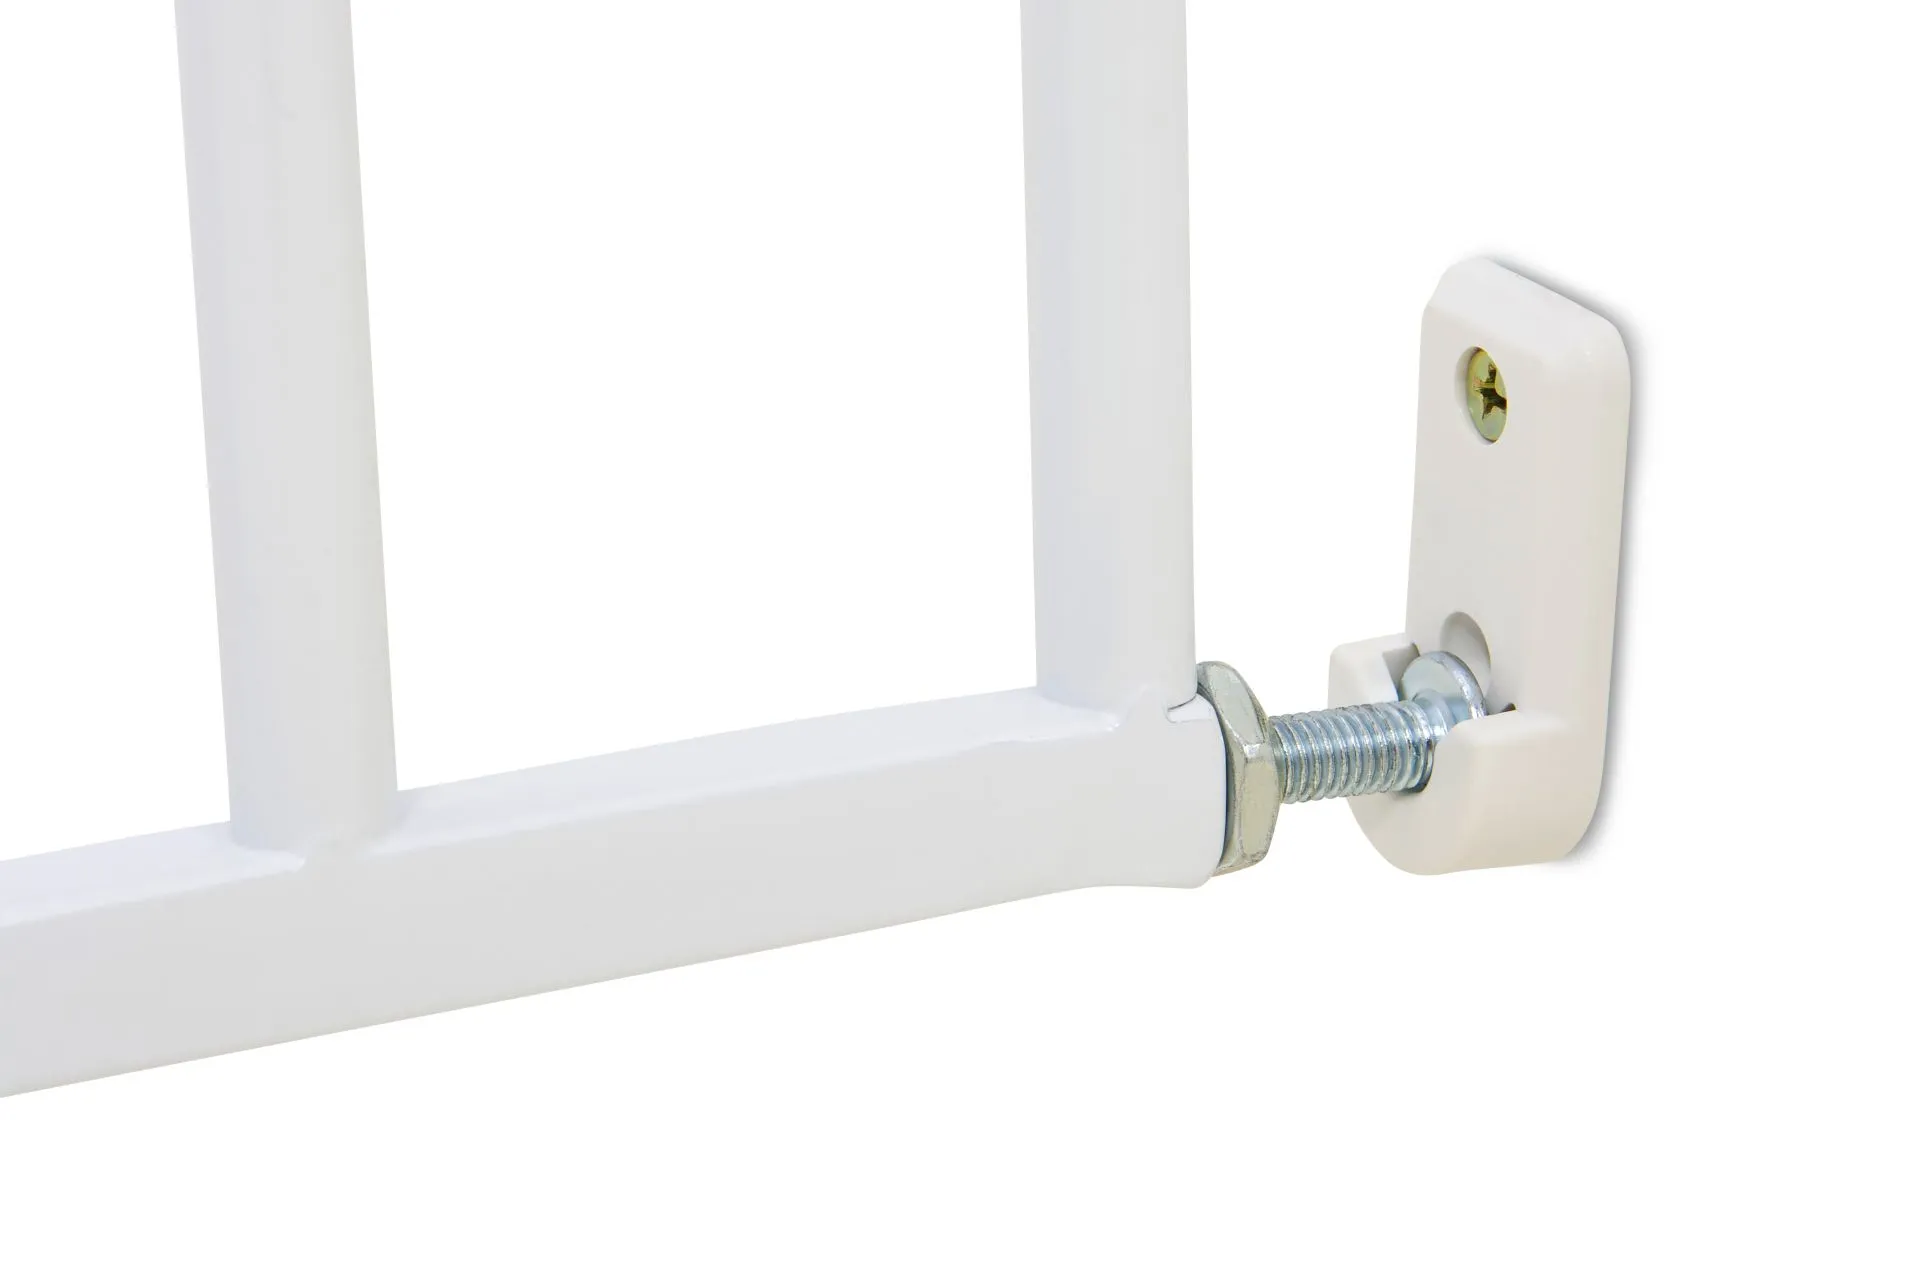 Türschutzgitter 4710 für Öffnungen von 60-107 cm aus Metall, weiß